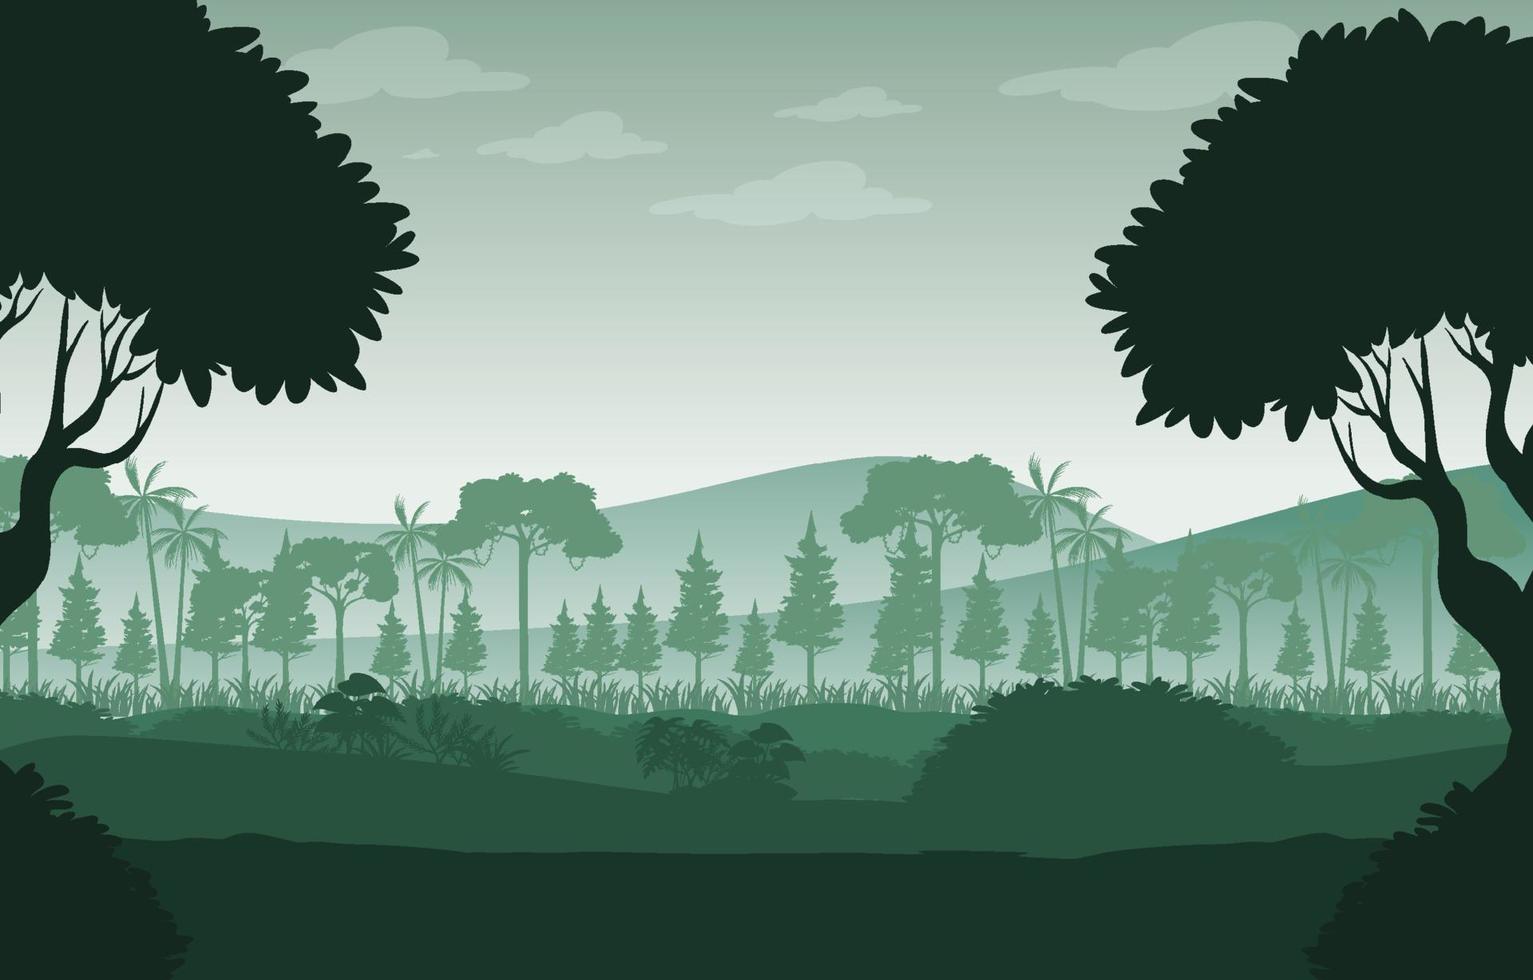 sfondo del paesaggio forestale silhouette vettore